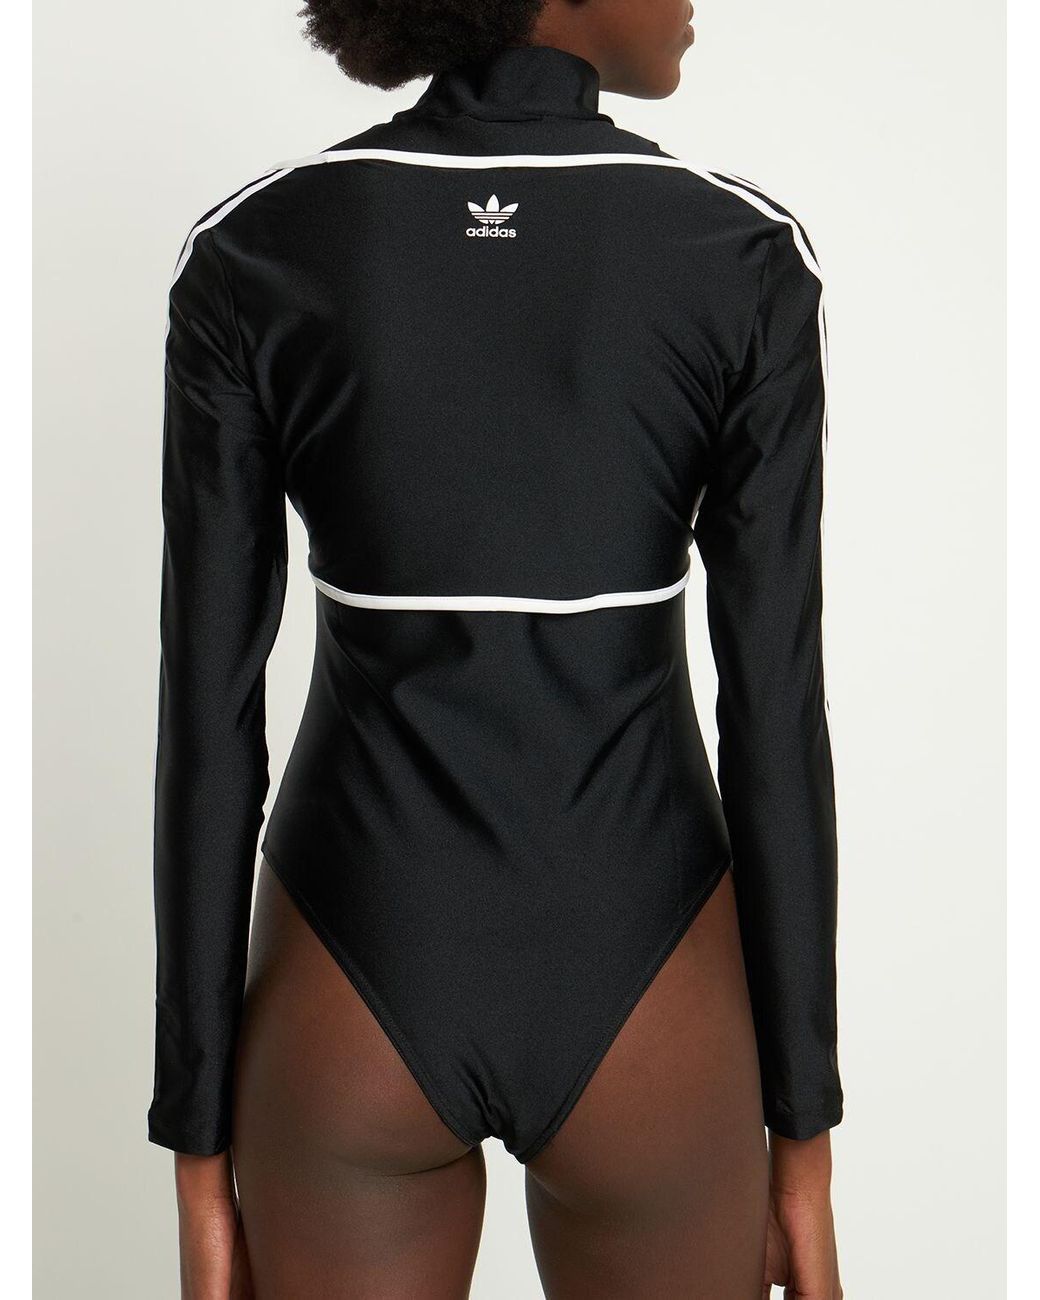 adidas Originals 2-in-1 Bodysuit & Top in Black | Lyst UK